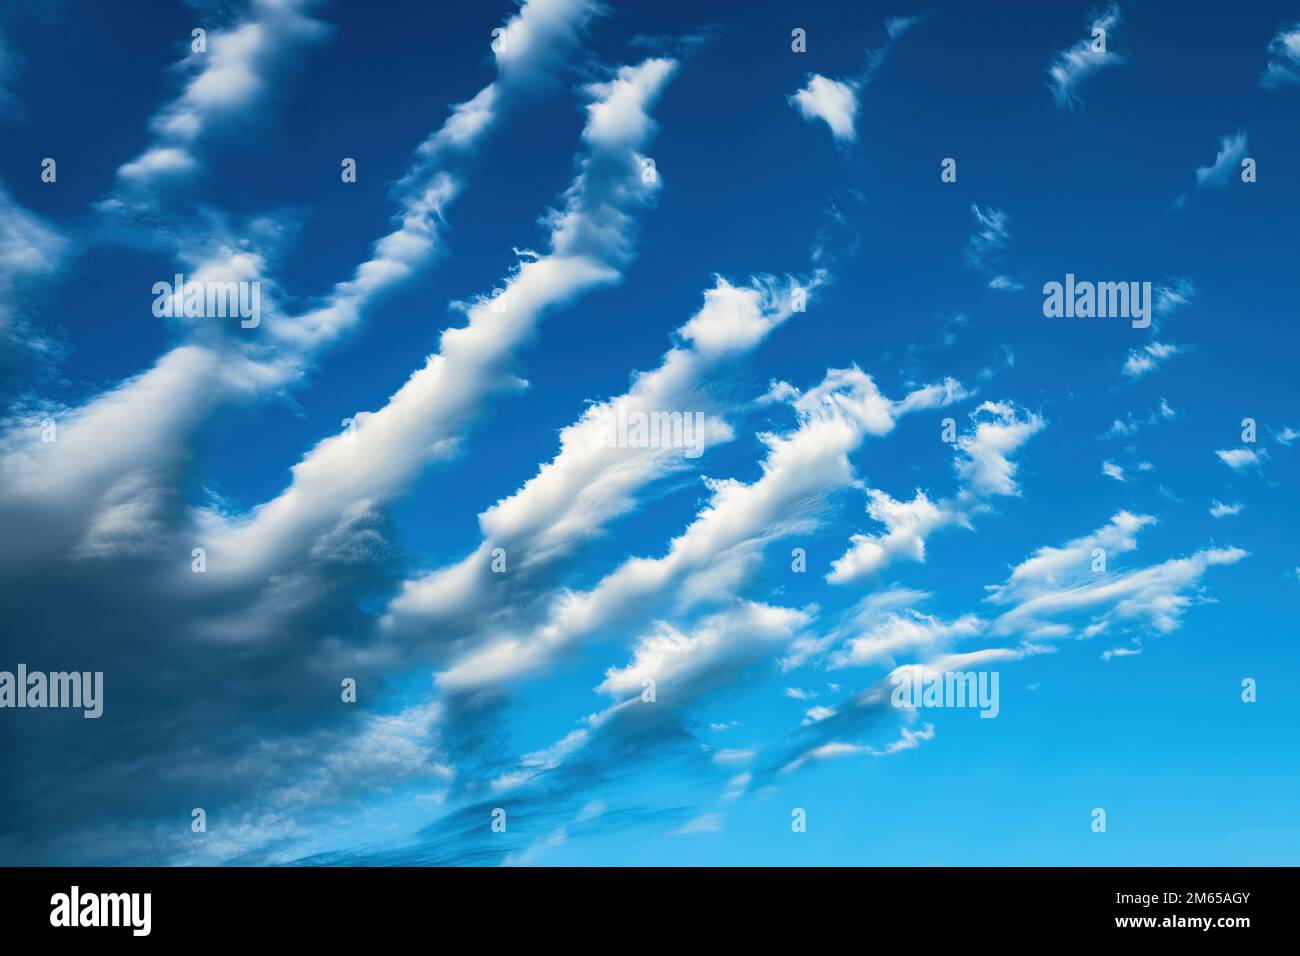 Des nuages de cirrus inhabituels formant des bandes parallèles dans le ciel bleu en été après-midi Banque D'Images